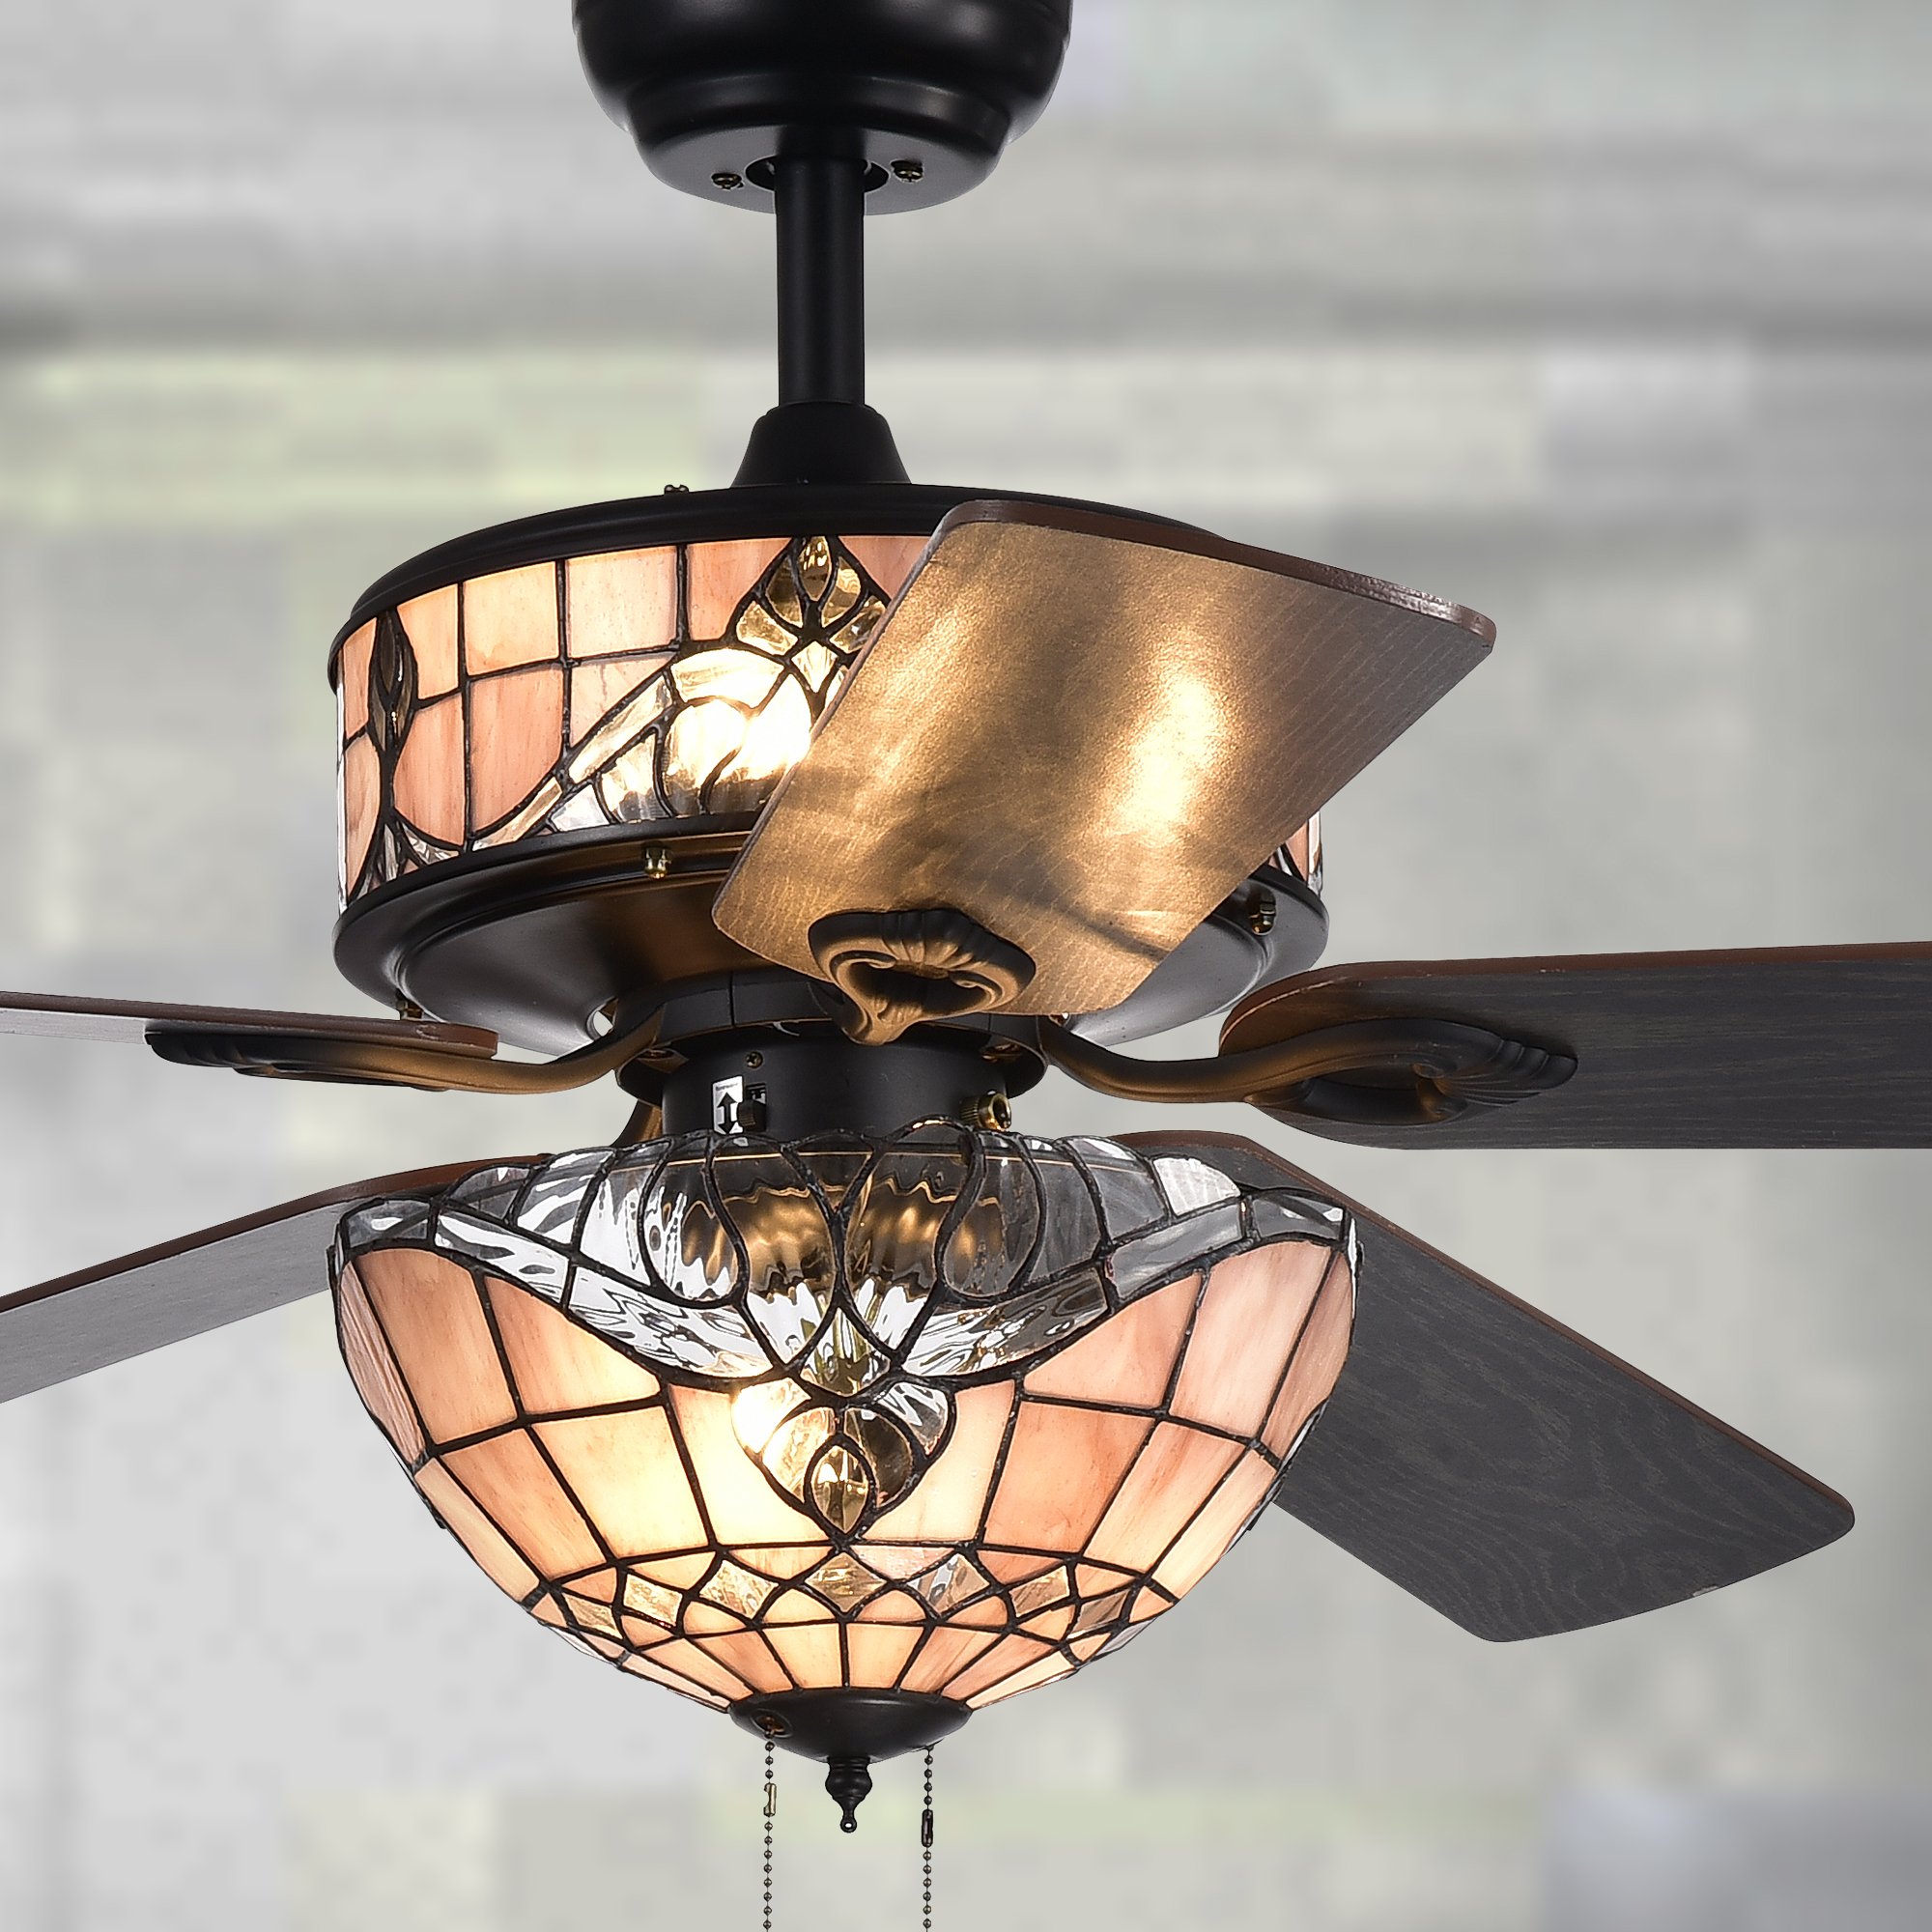 Warehouse of Tiffany CFL-8285BL Ceiling Fan, 52